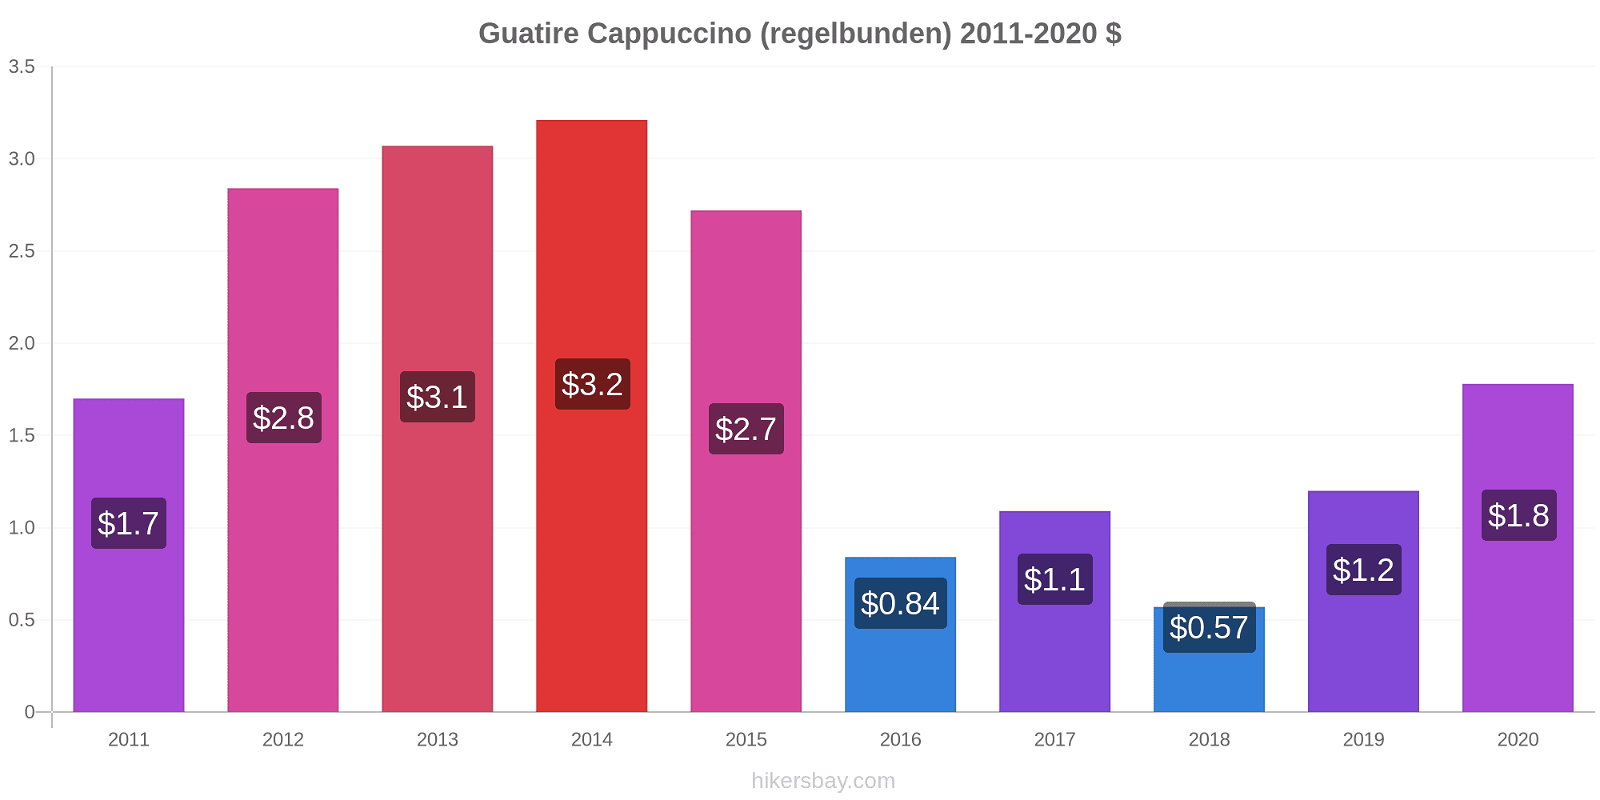 Guatire prisförändringar Cappuccino (regelbunden) hikersbay.com